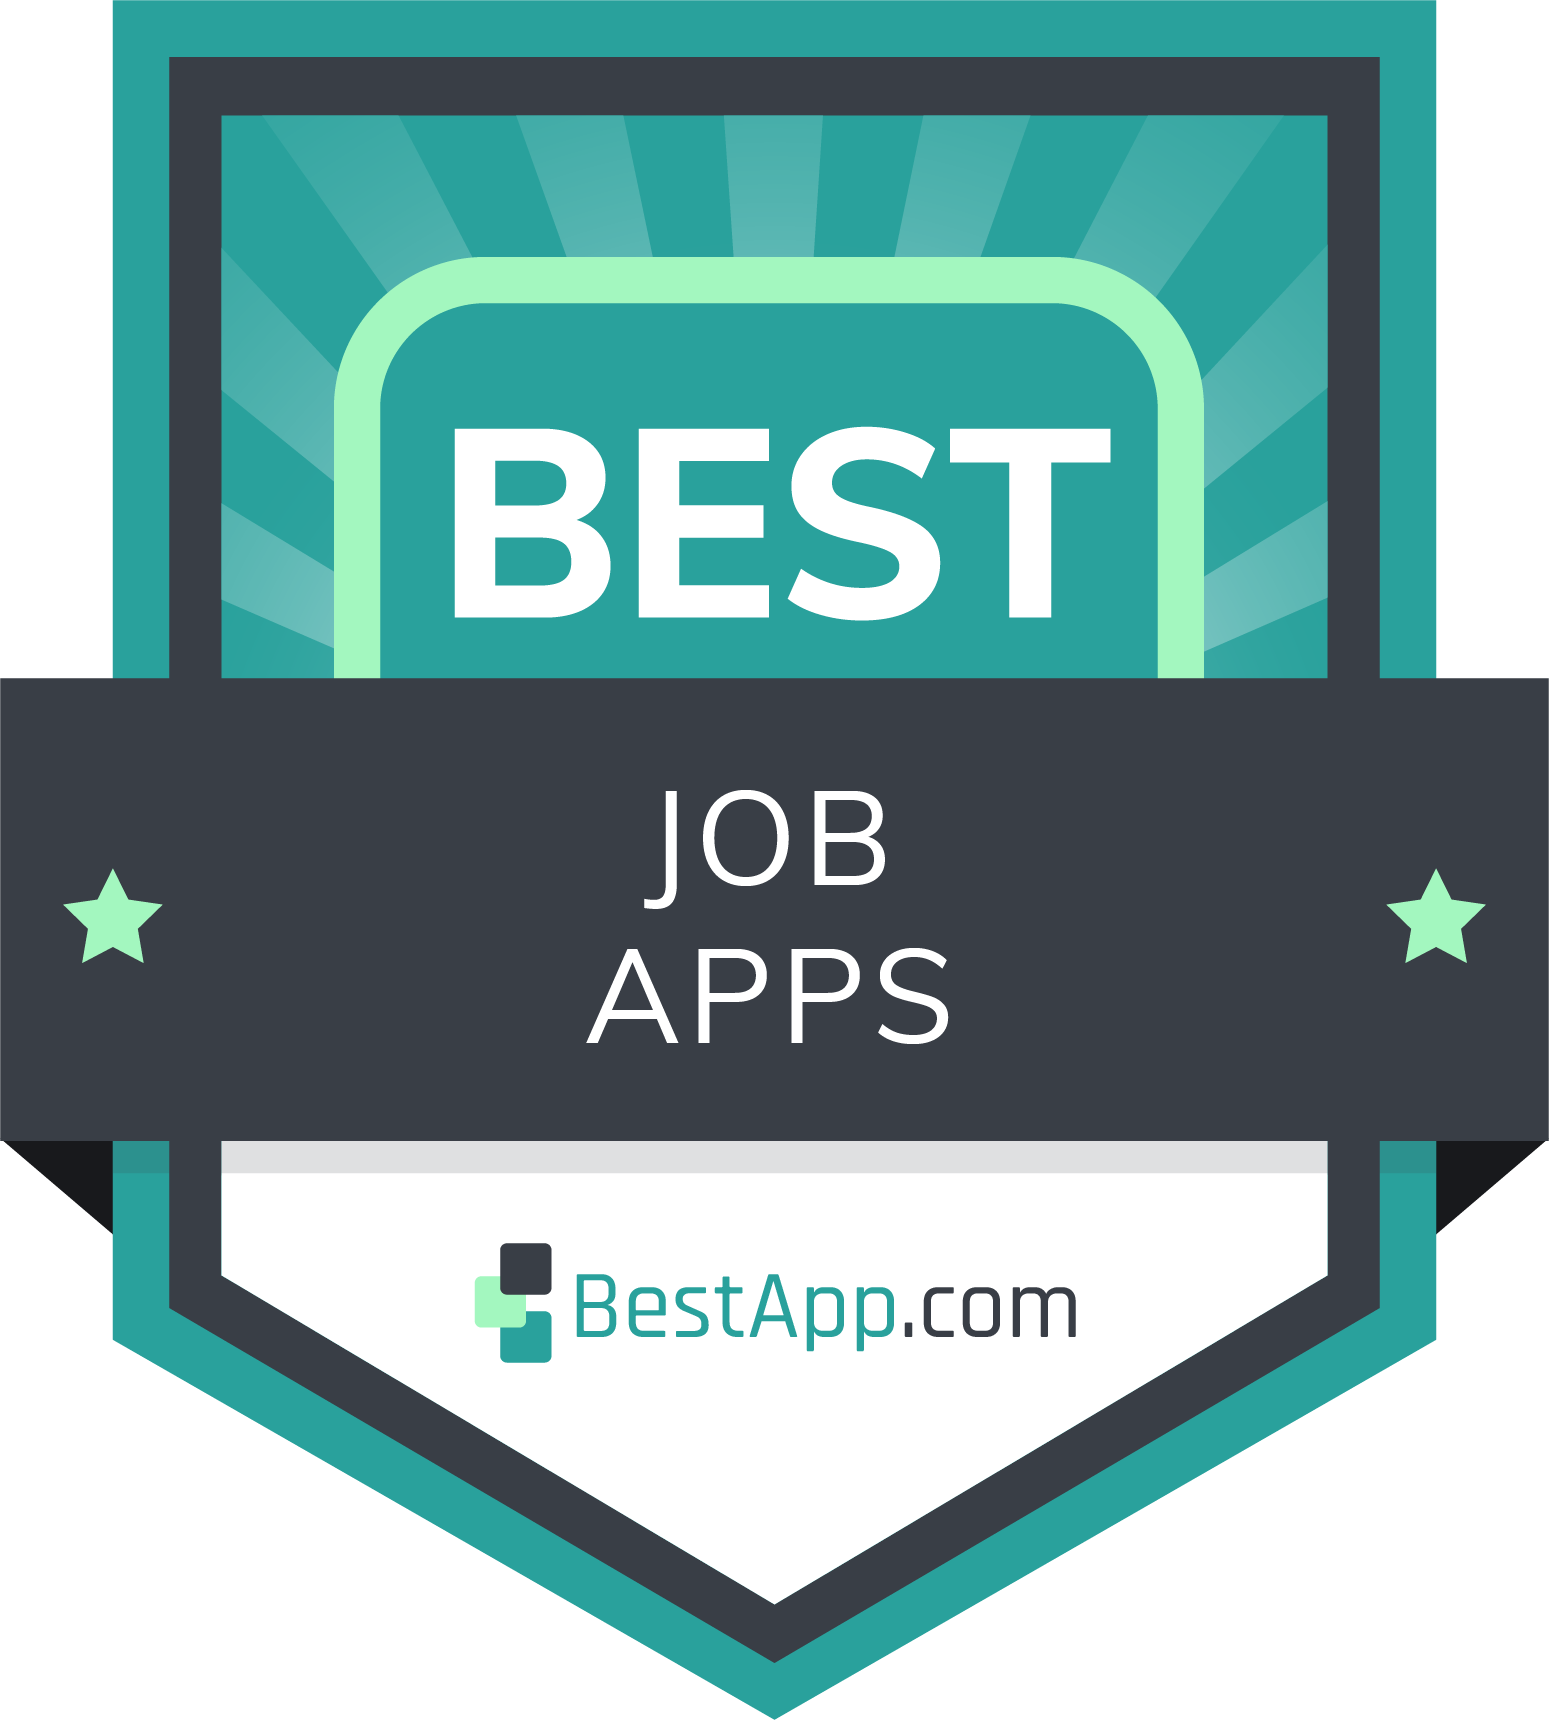 Best Job Apps Badge